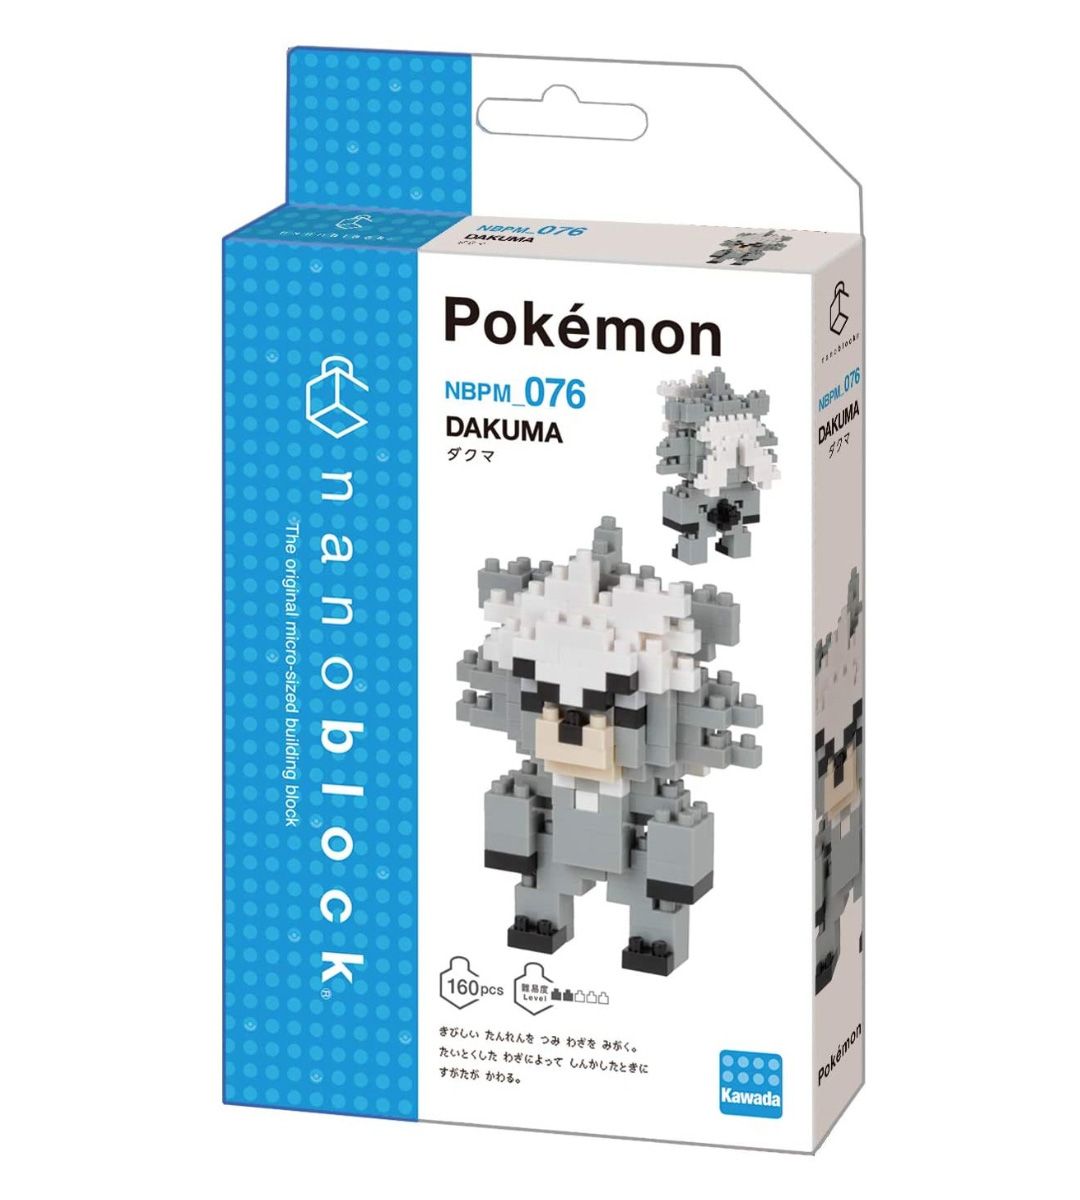 Pokémon x Nanoblock - Wushours - NBPM 076